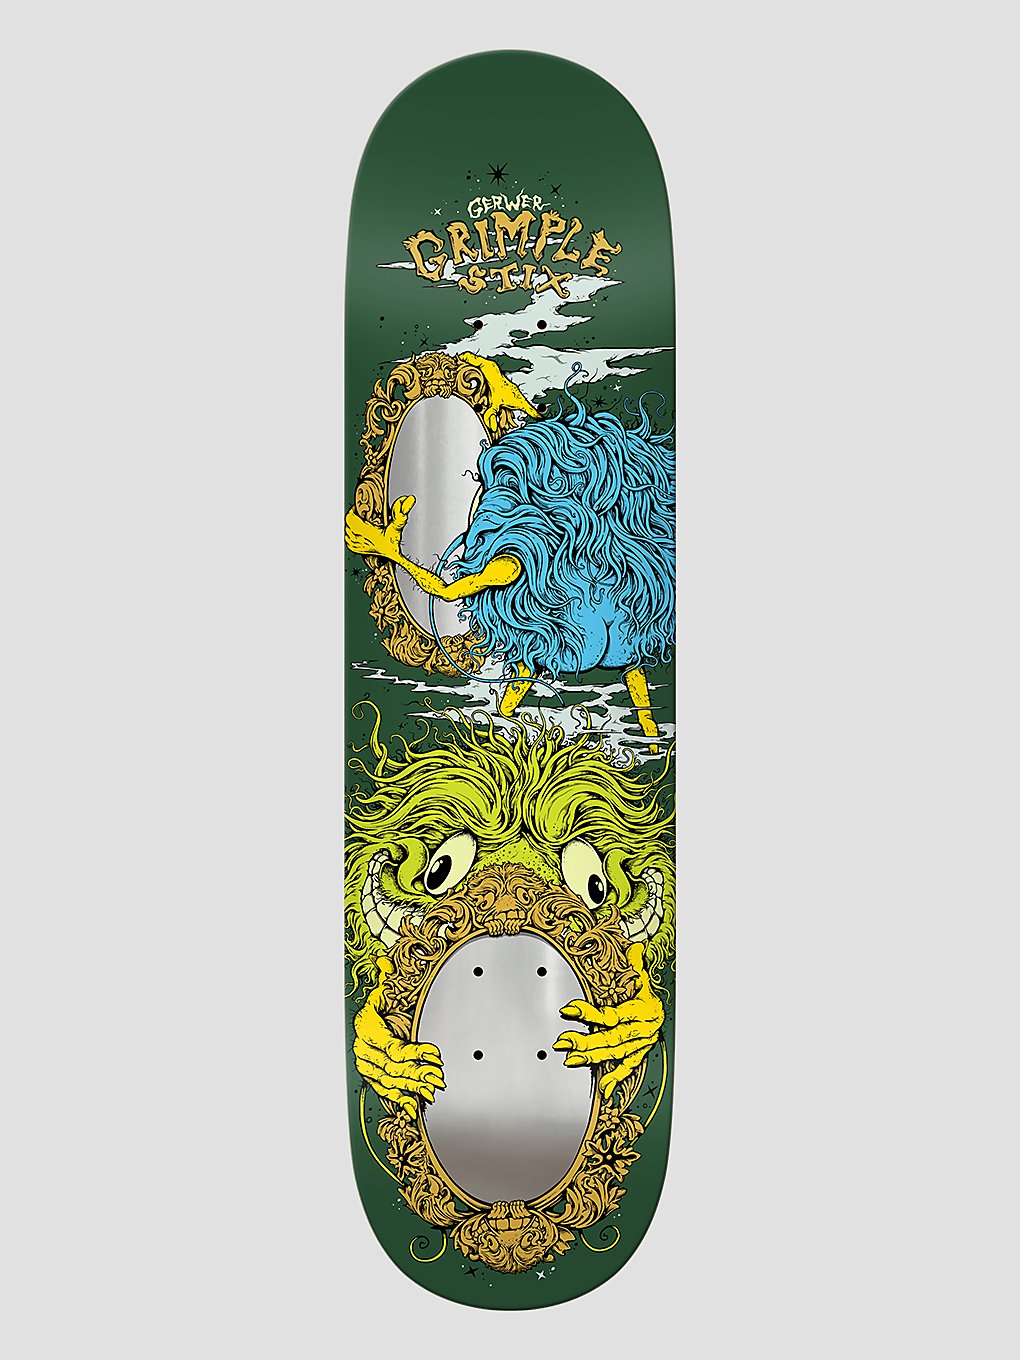 Antihero Gerwer Grimple Smoke And Mirrors 8.25" Skateboard Deck pattern kaufen